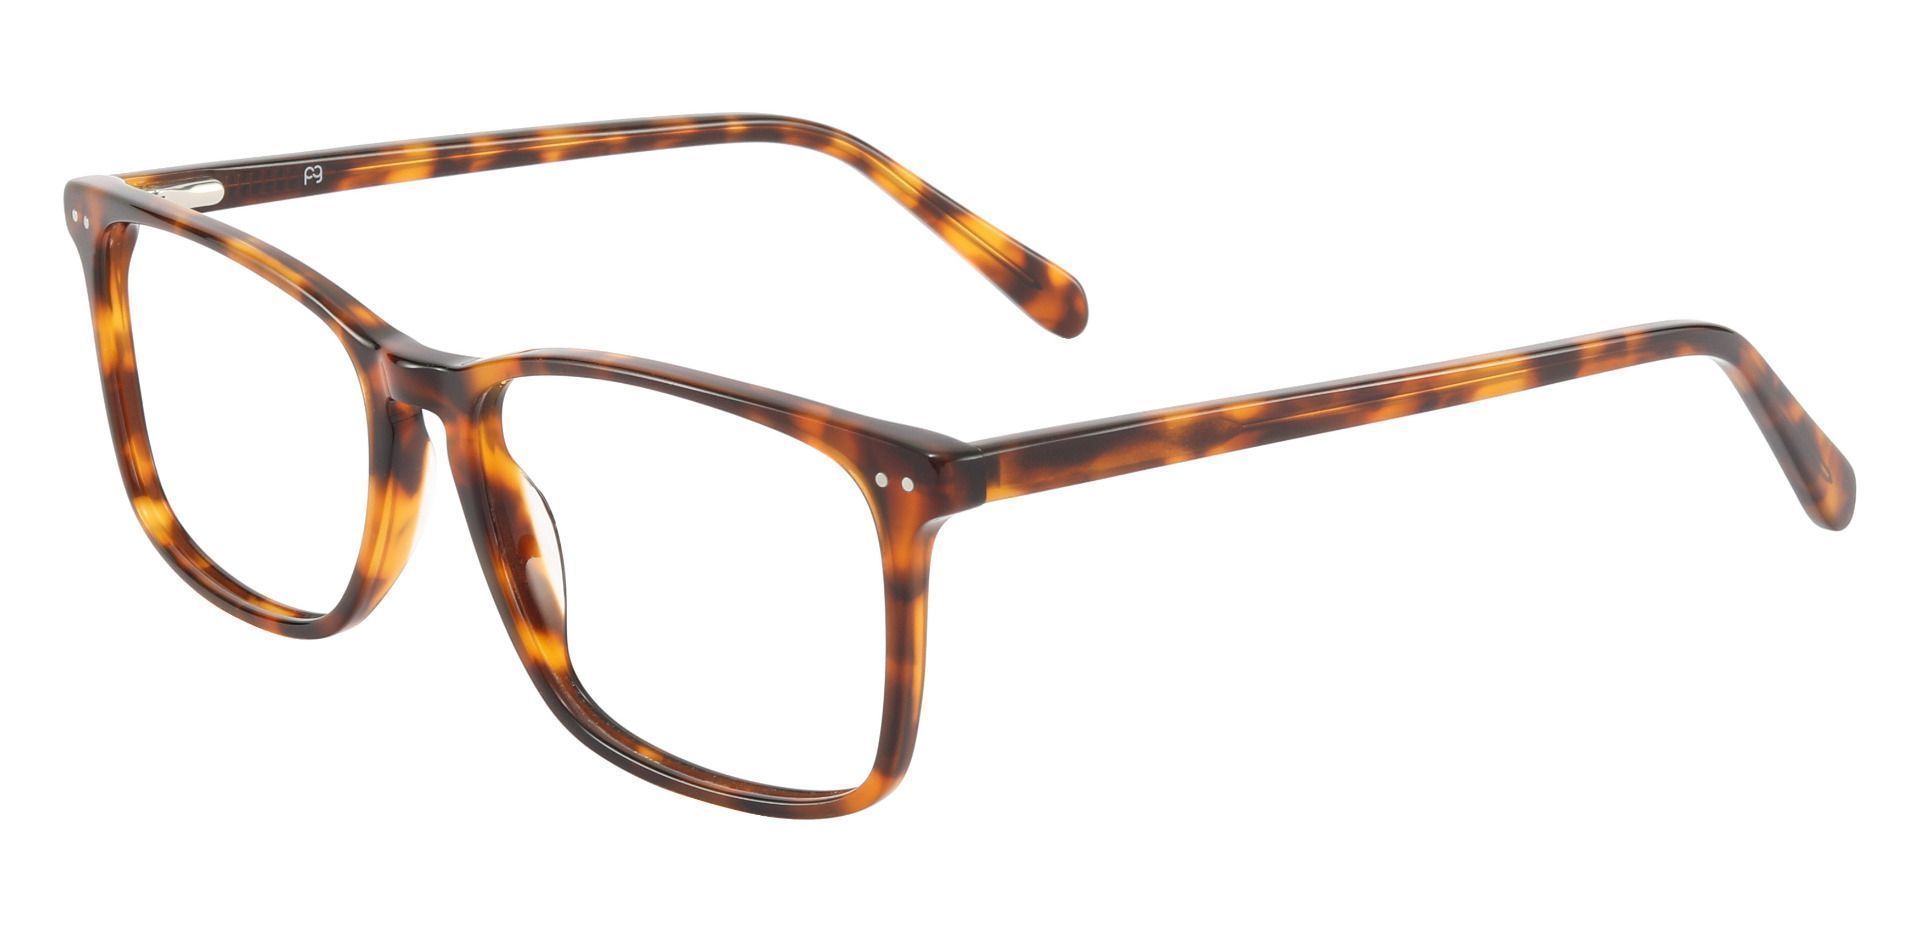 Finney Rectangle Progressive Glasses - Tortoise